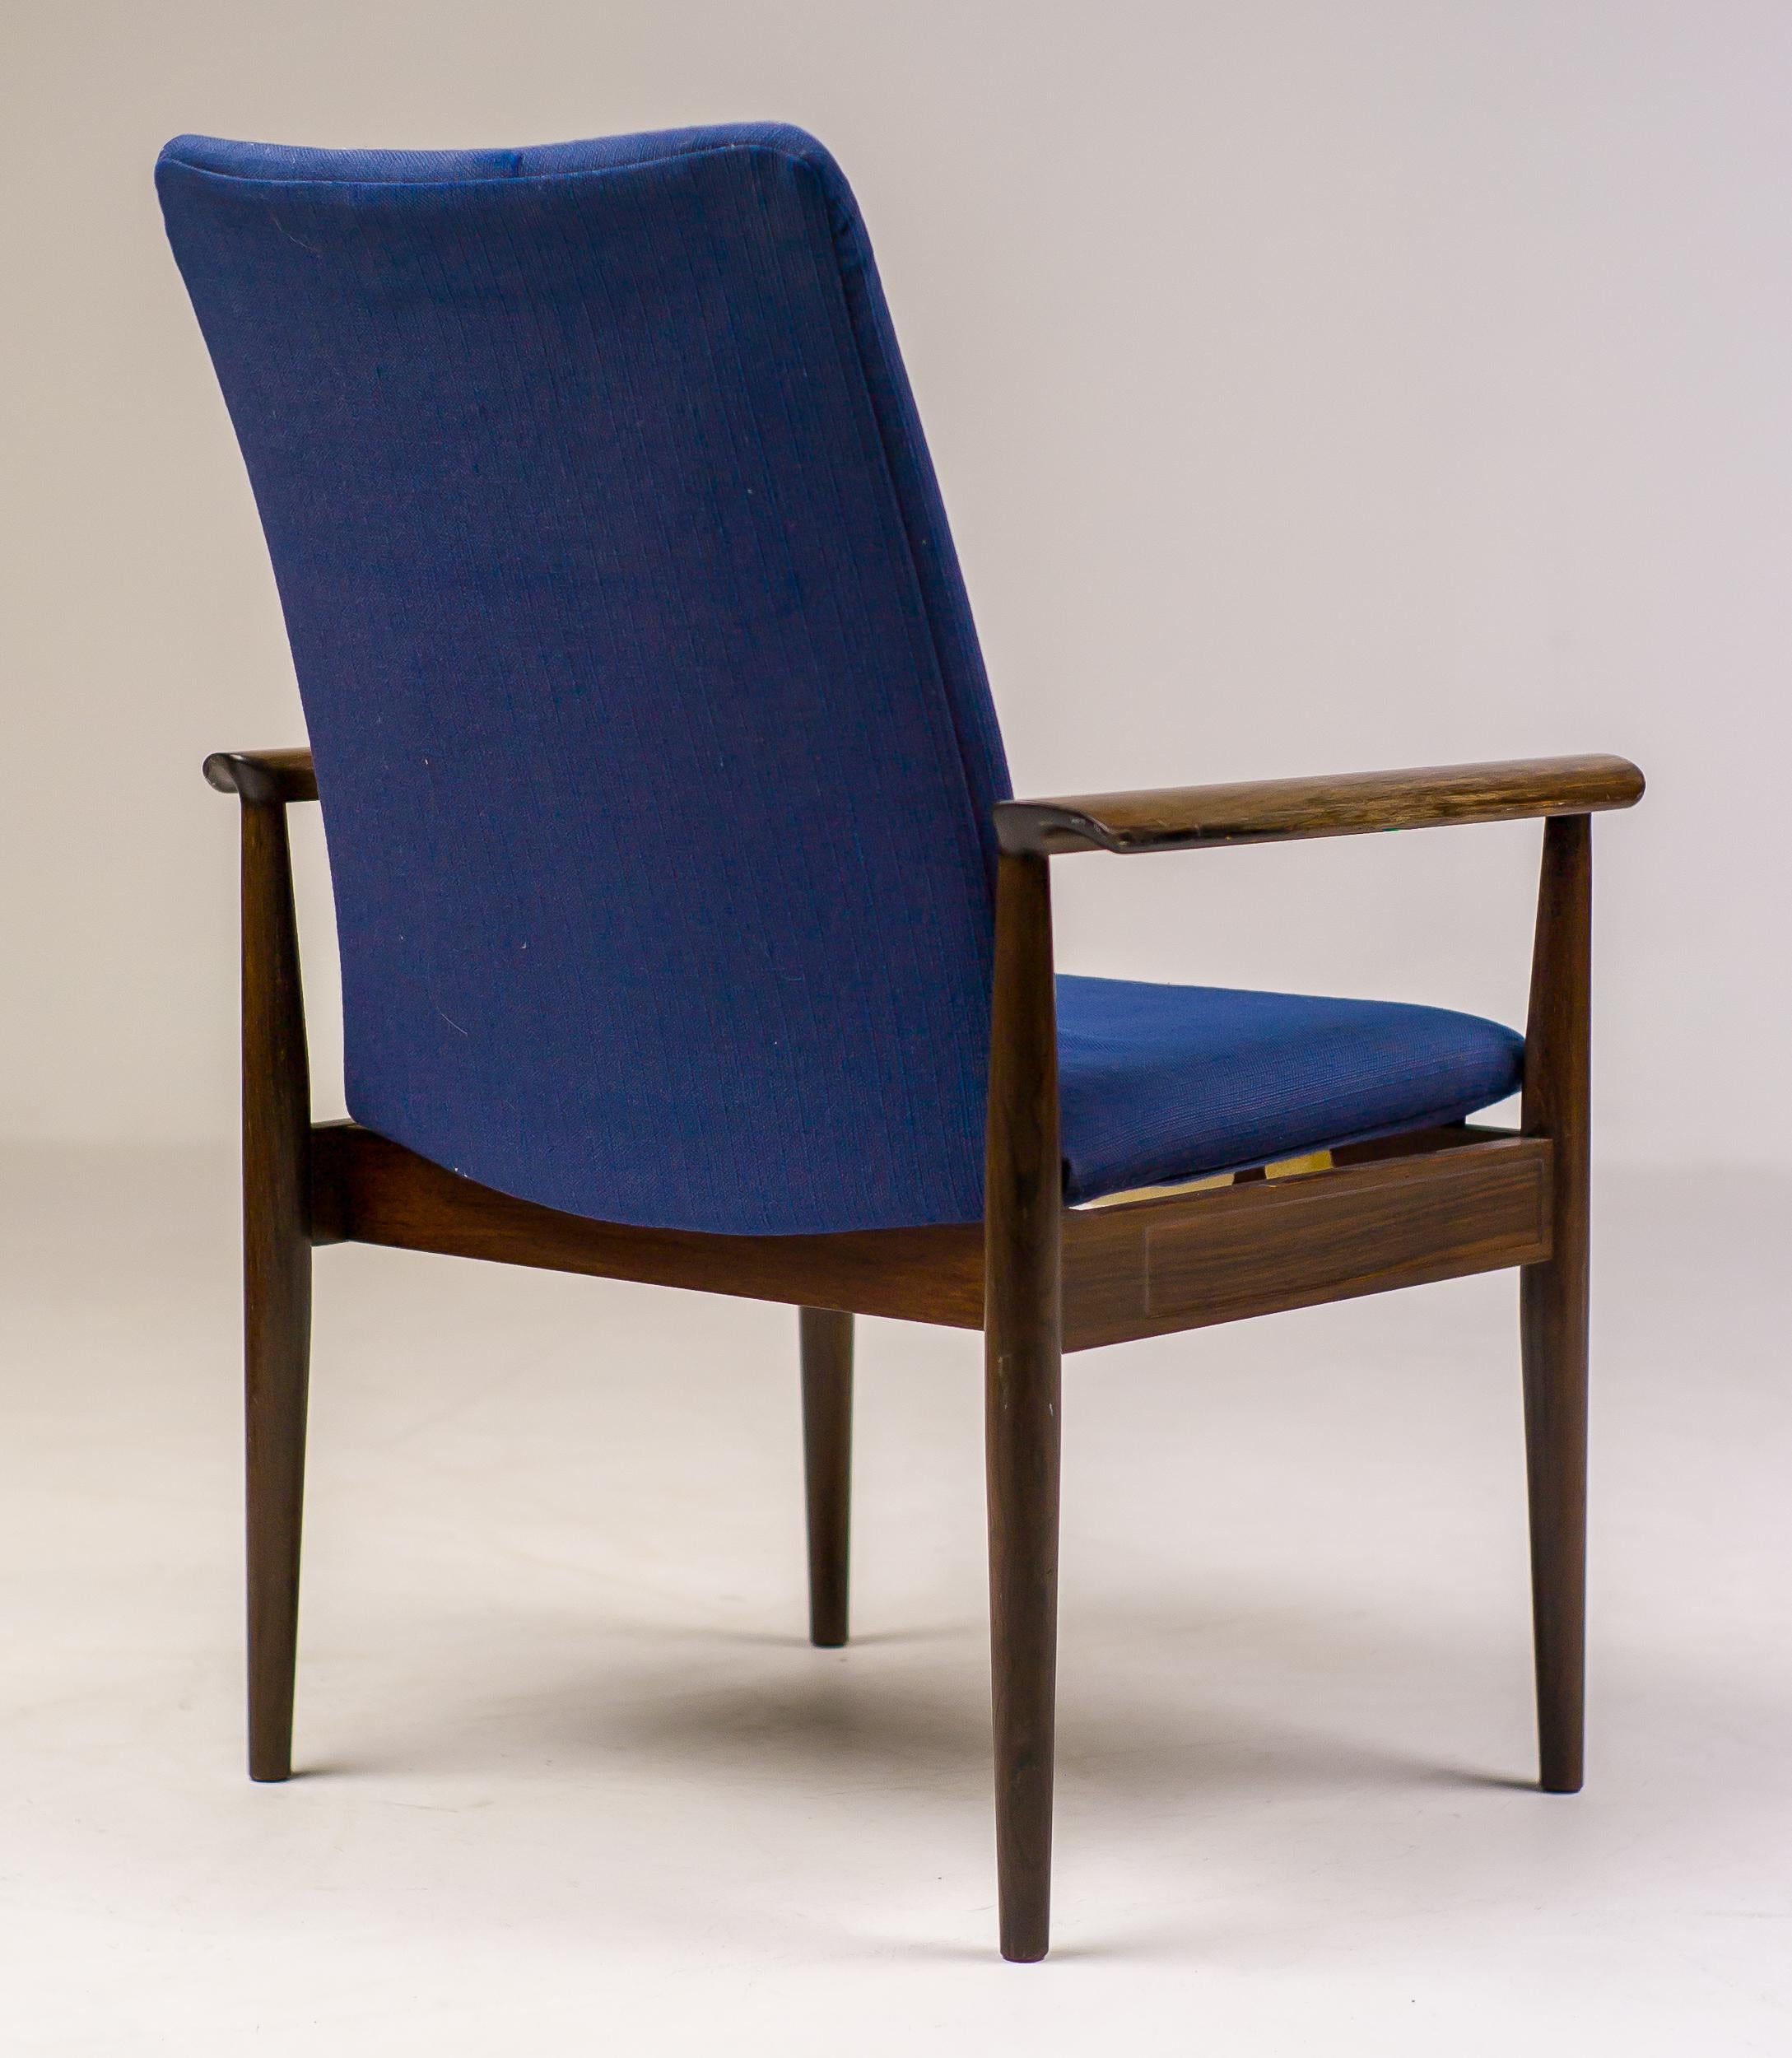 Distinguished Diplomat Chair aus Palisanderholz, entworfen von Finn Juhl und hergestellt von Cado.
Vollständig originaler Vintage-Zustand, mit silbernem Finn Juhls Label versehen.

Stoff und Schaumstoff sind abgenutzt, die Stahlfedern noch in